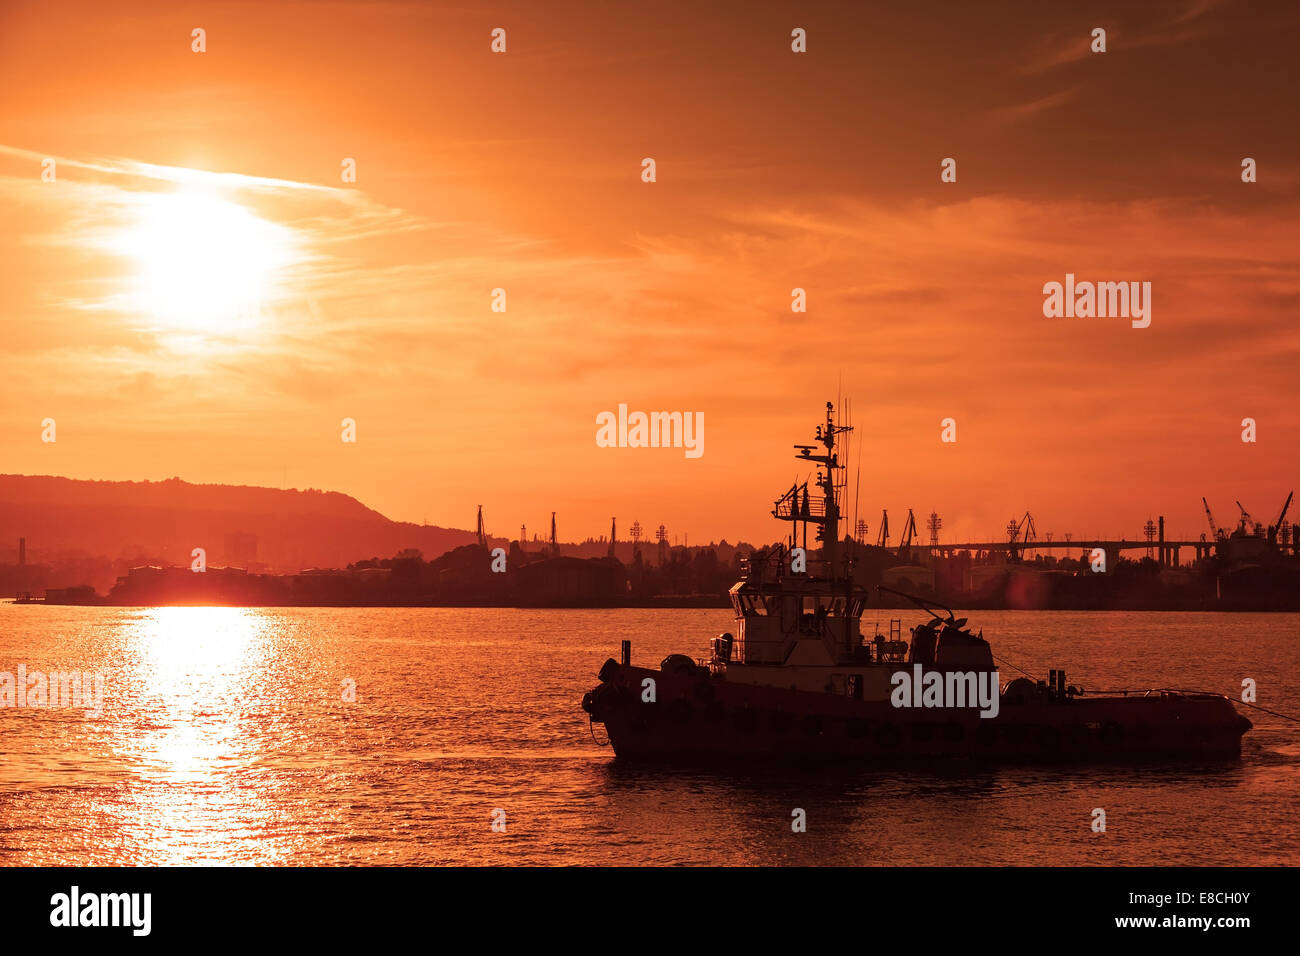 Tug is underway on Black sea at sunset, Varna harbor, Bulgaria Stock Photo